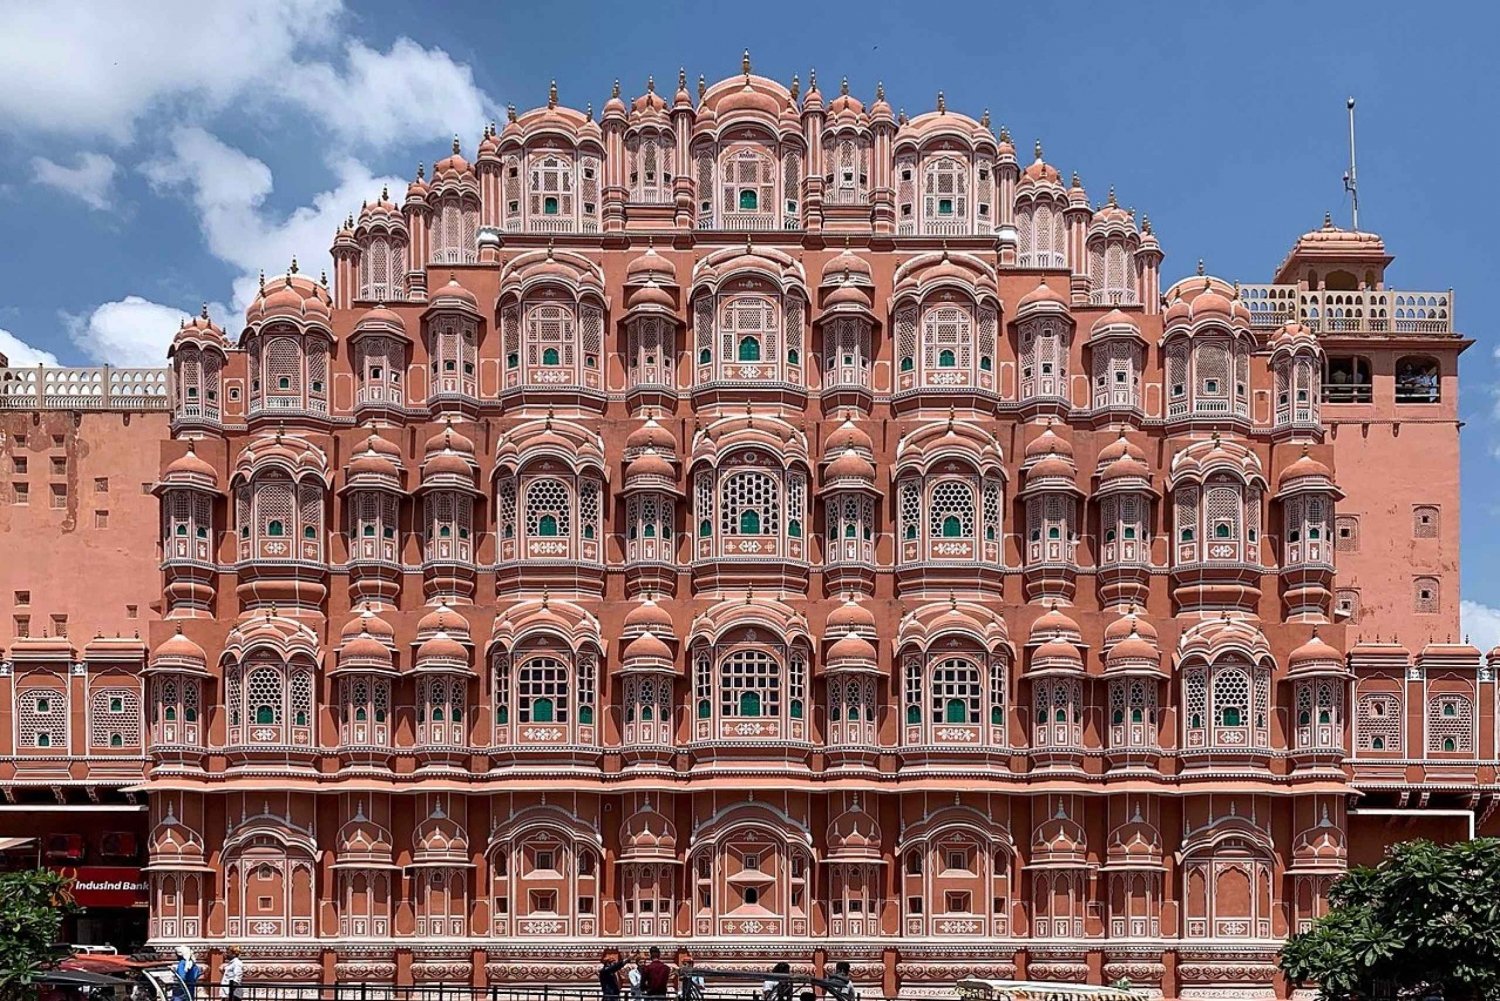 Heldags sightseeingtur i Jaipur med tuk tuk.